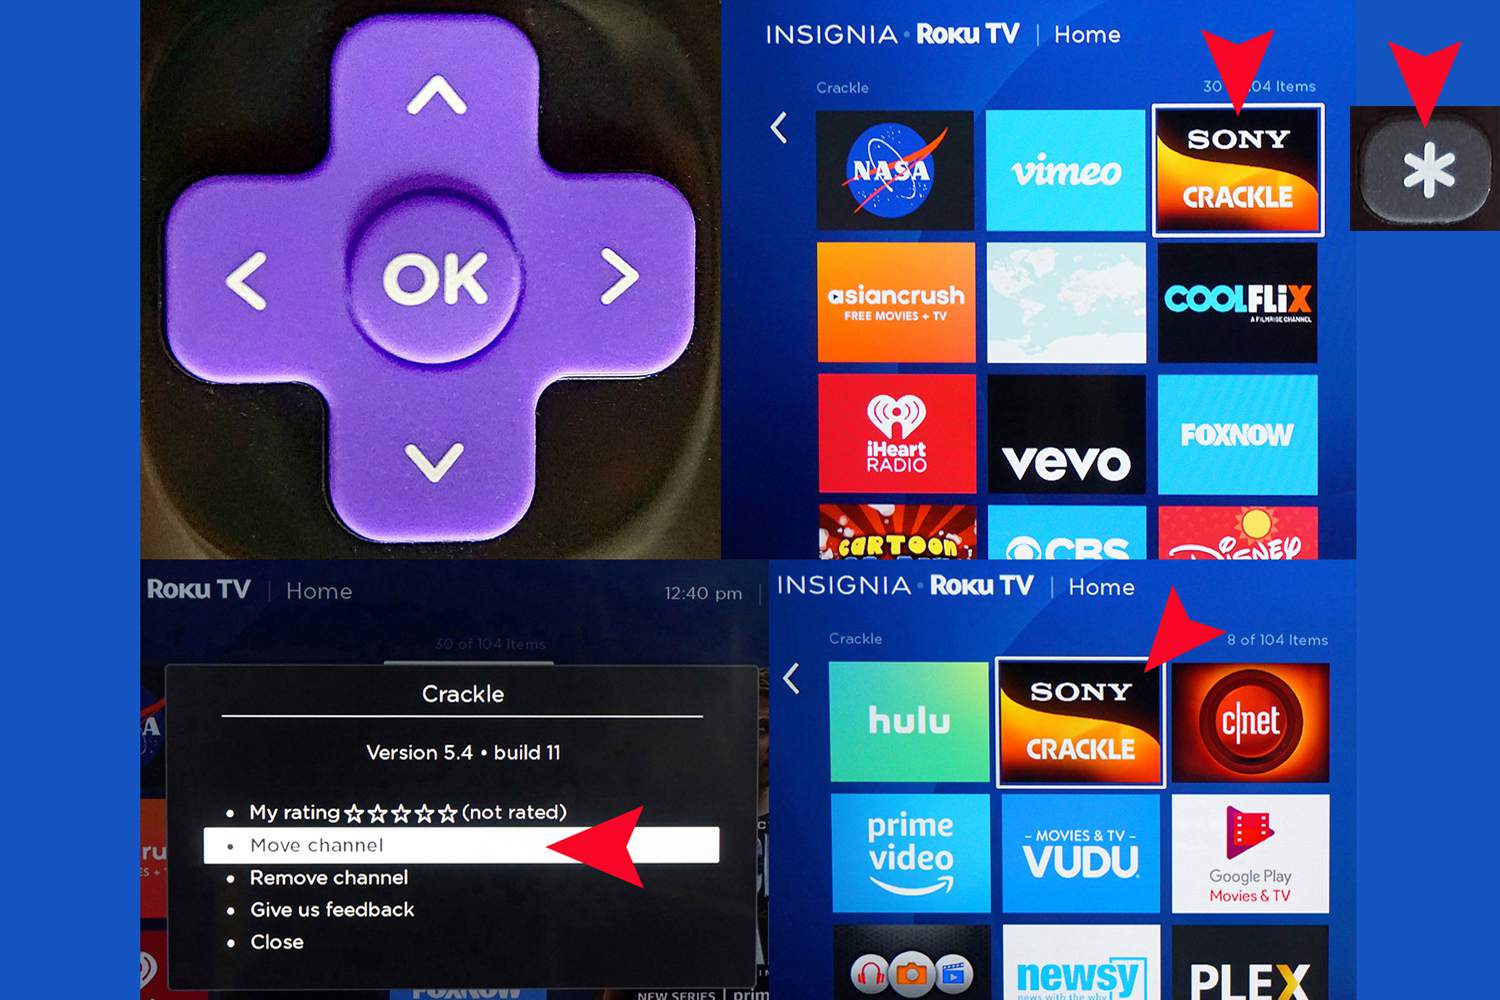 Roku TV Remote - Teclado direcional - Reordenação de aplicativos no menu inicial